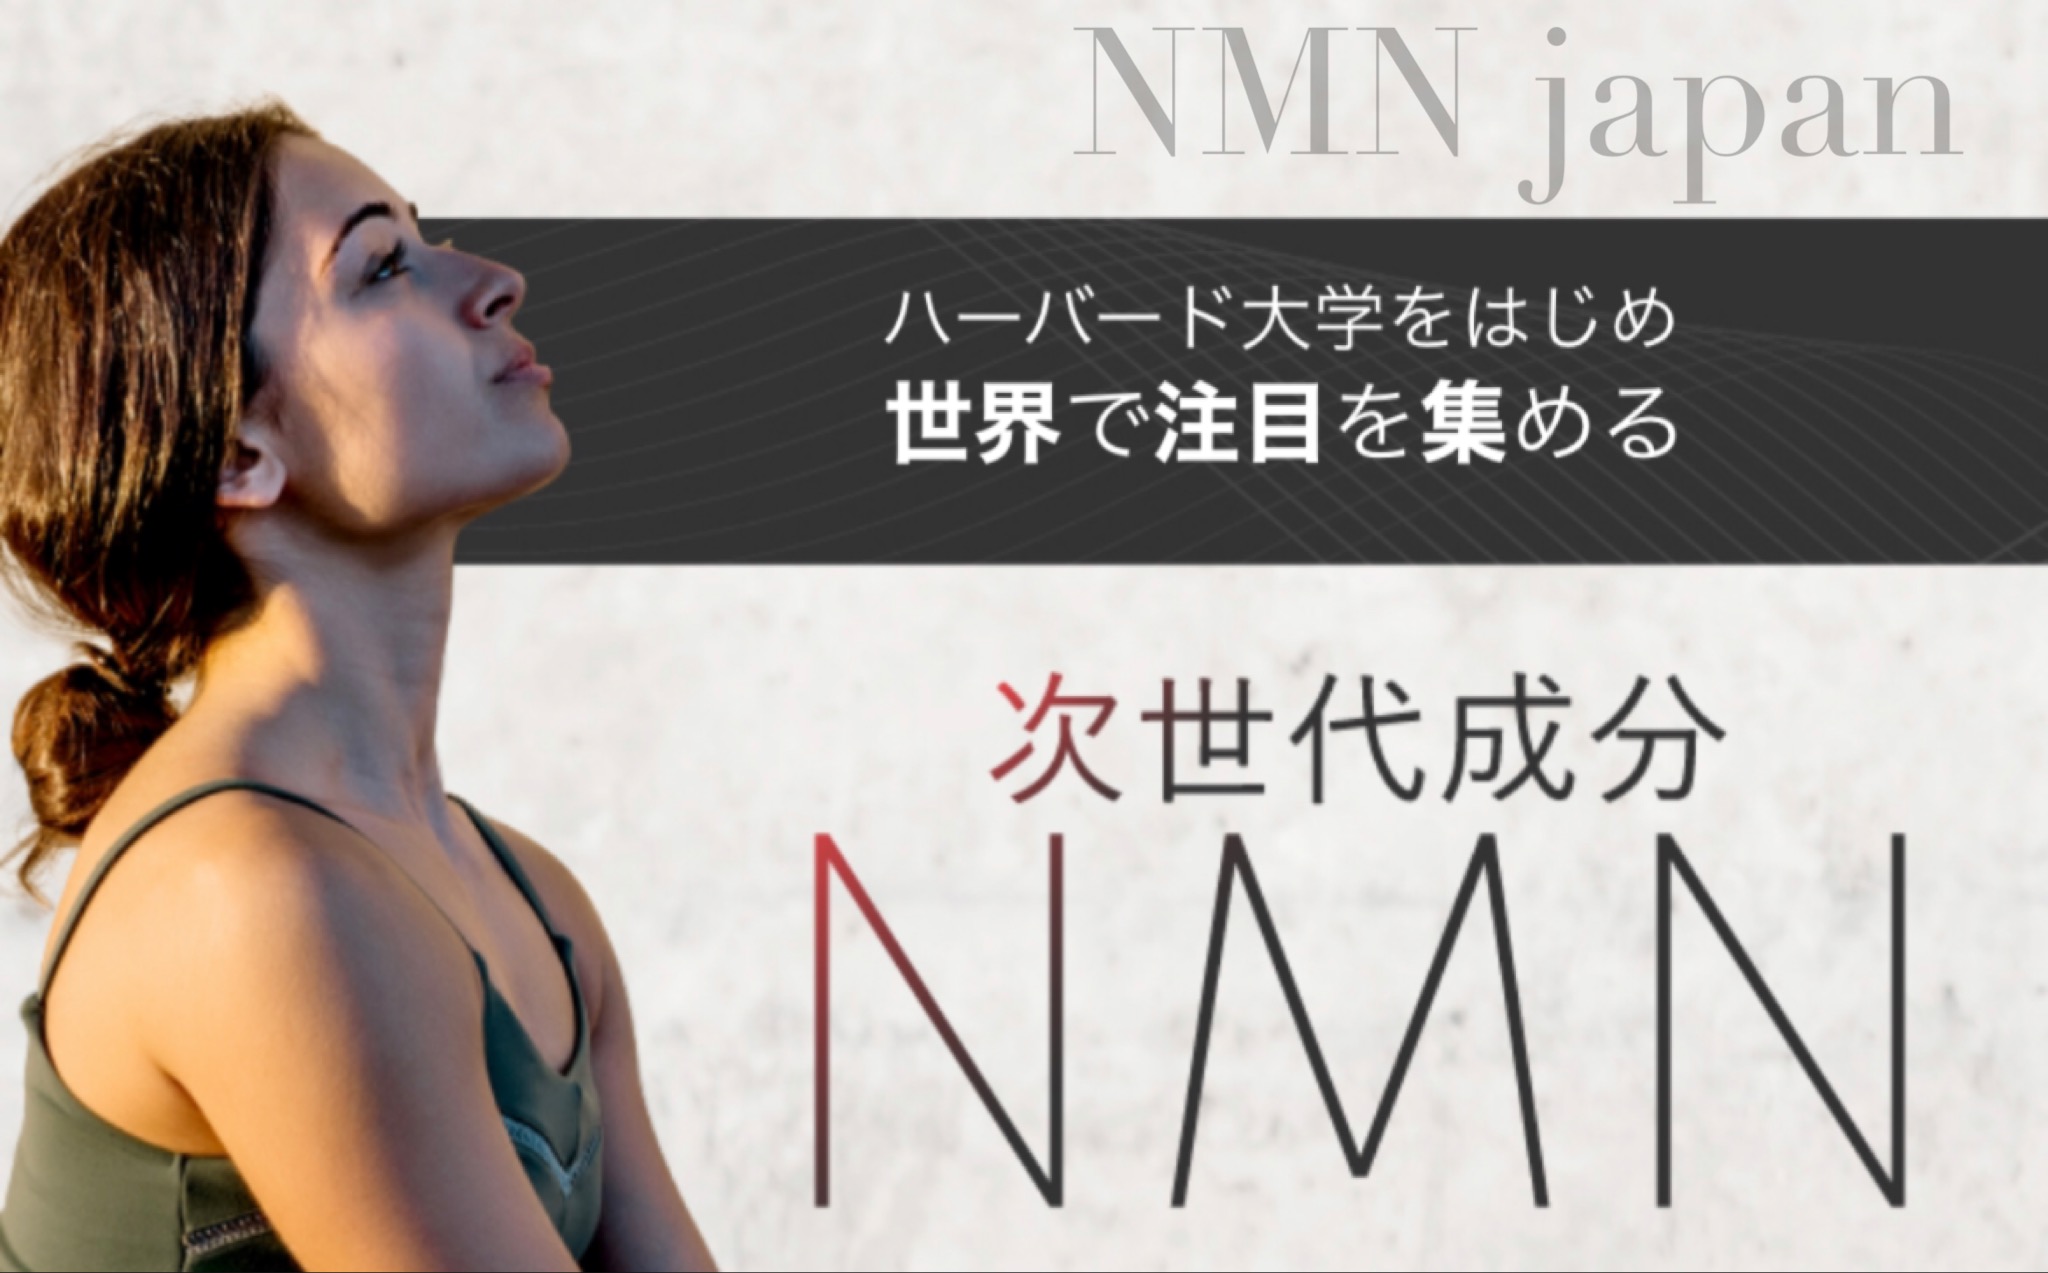 NMN japan